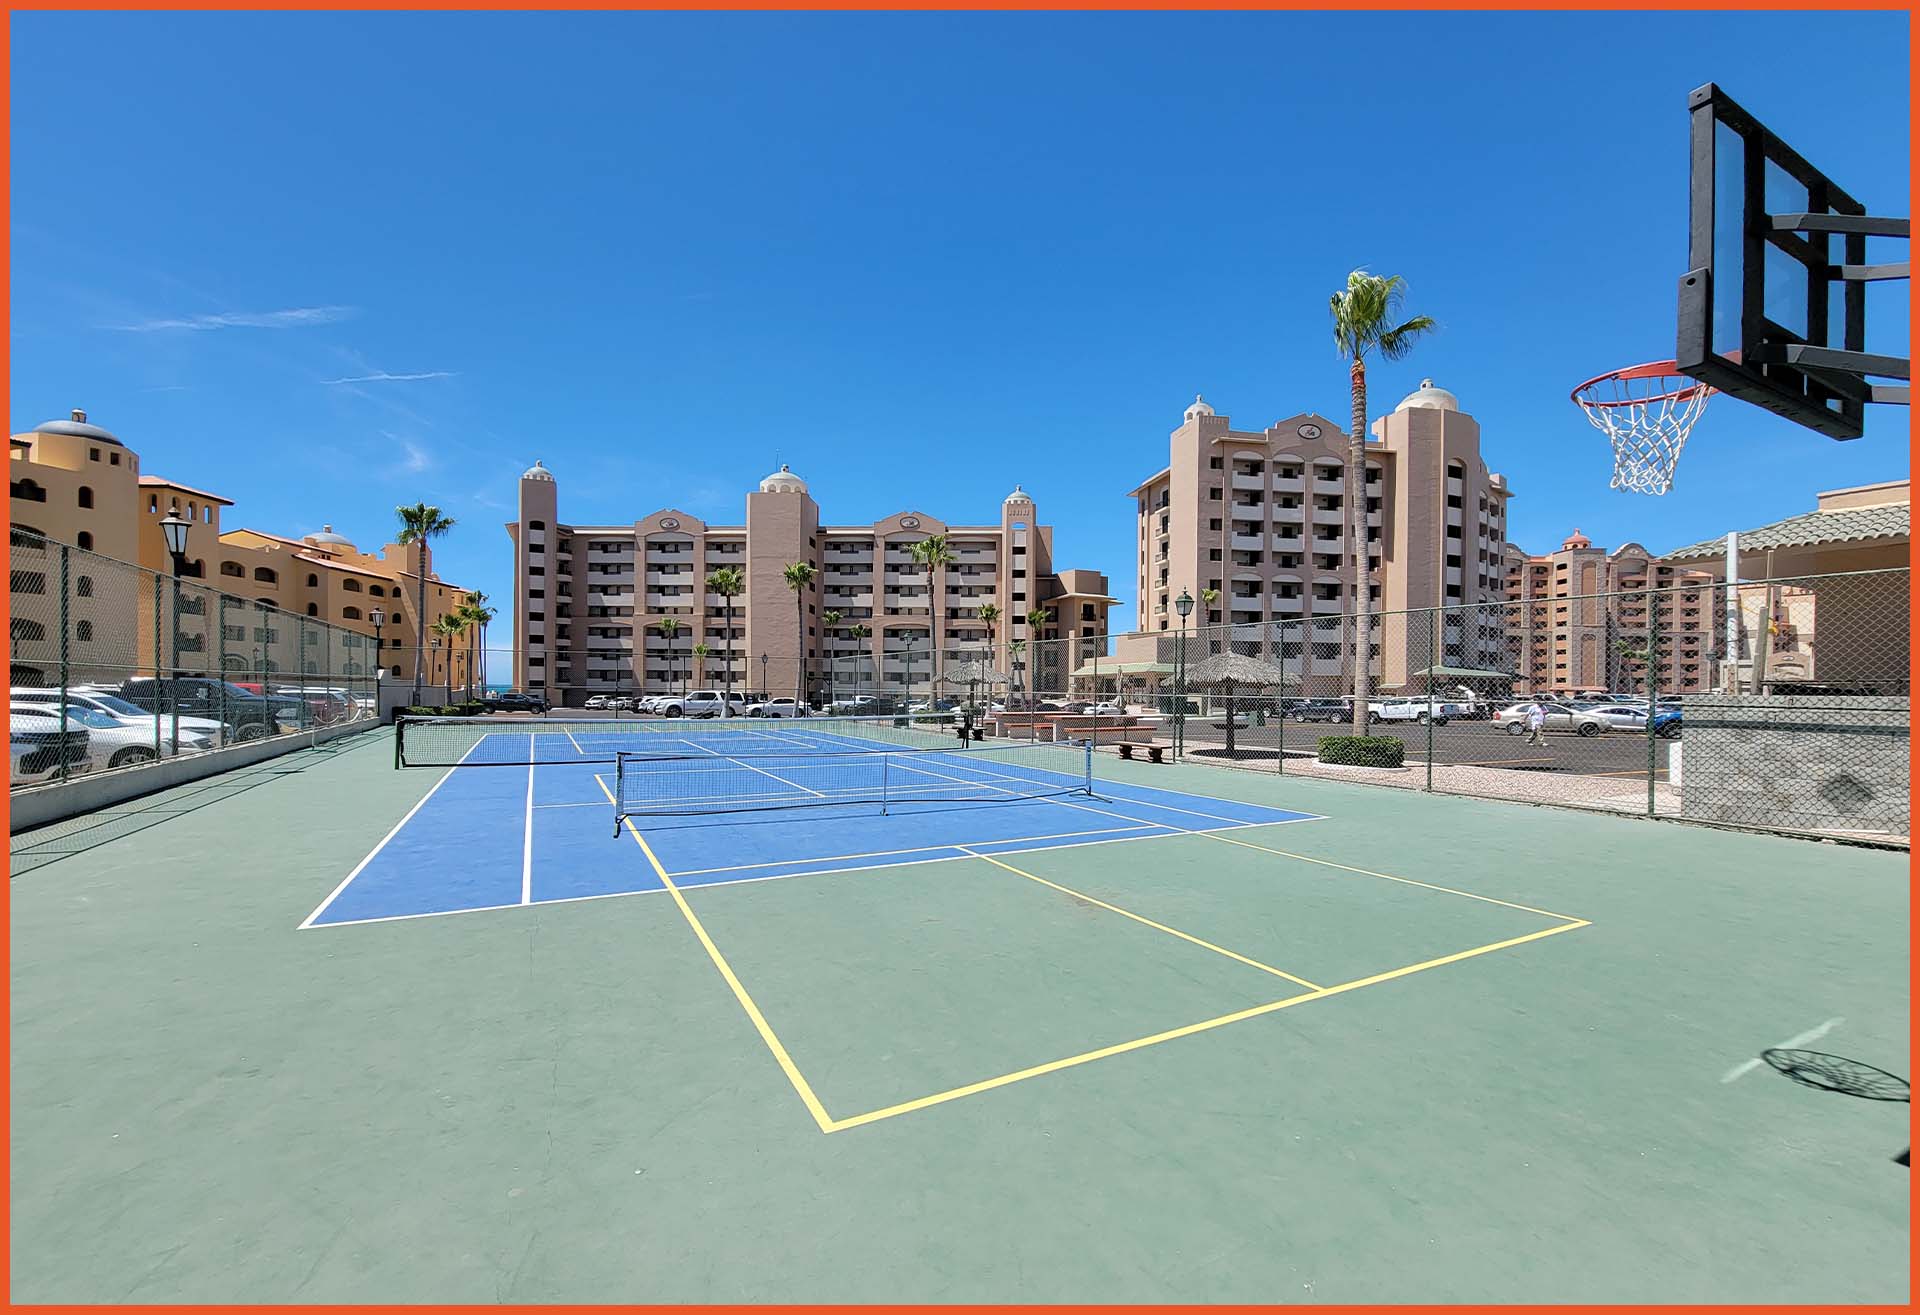 Sonoran Spa Tennis Court Rocky Point, Puerto Peñasco Sonora, Mexico Arizona USA